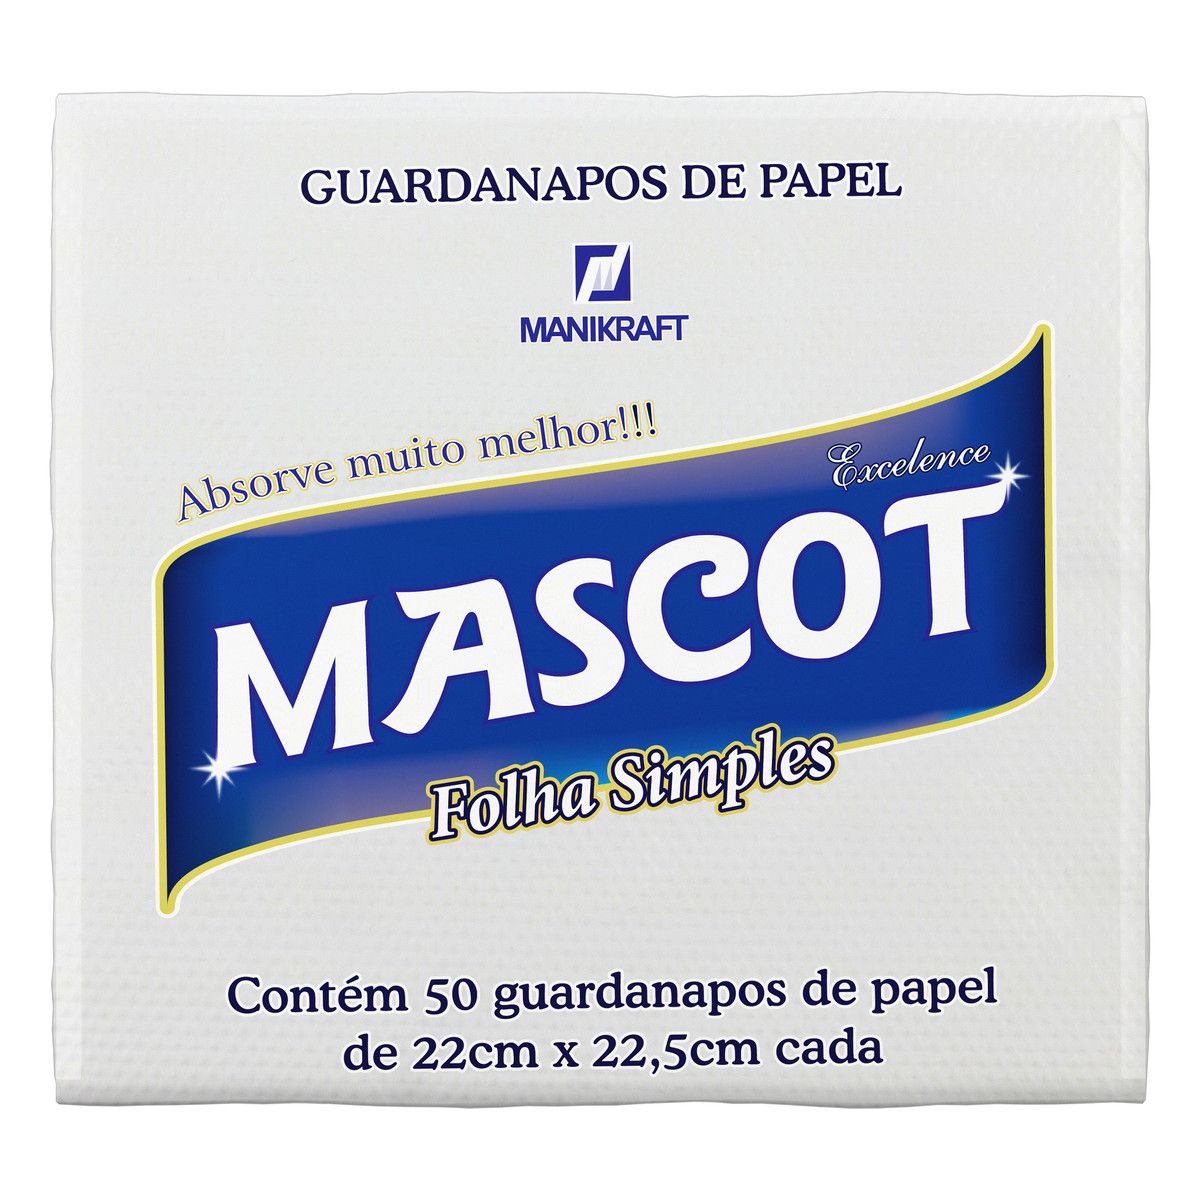 Guardanapo de Papel Folha Simples Mascot Excelence 22cm x 22,5cm Pacote 50 Unidades image number 0